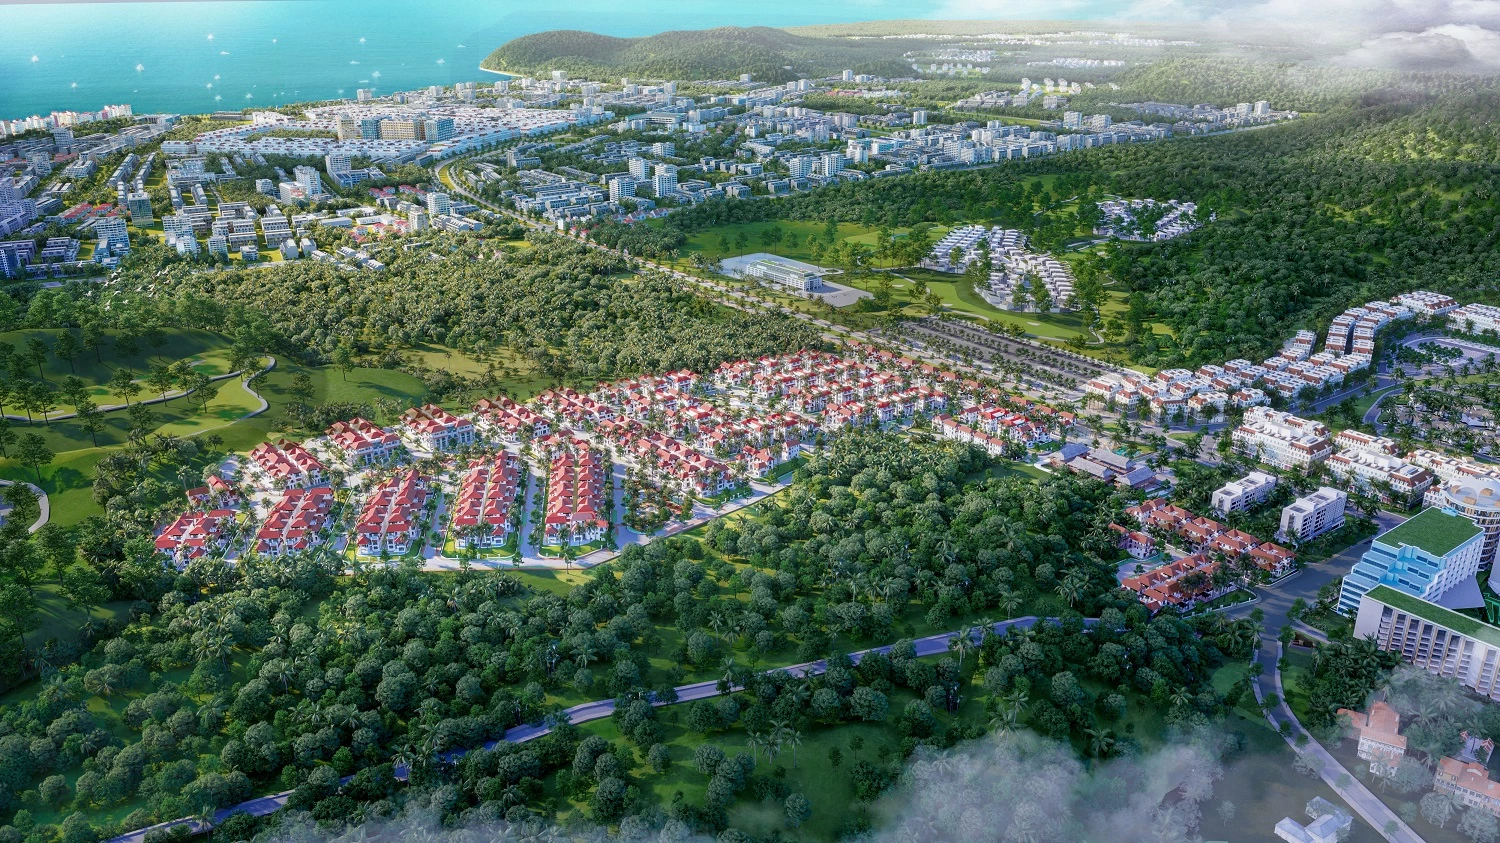 Sun Tropical Village là dự án tiên phong cho xu hướng BĐS chăm sóc sức khỏe tại Phú Quốc. Ảnh phối cảnh minh họa.